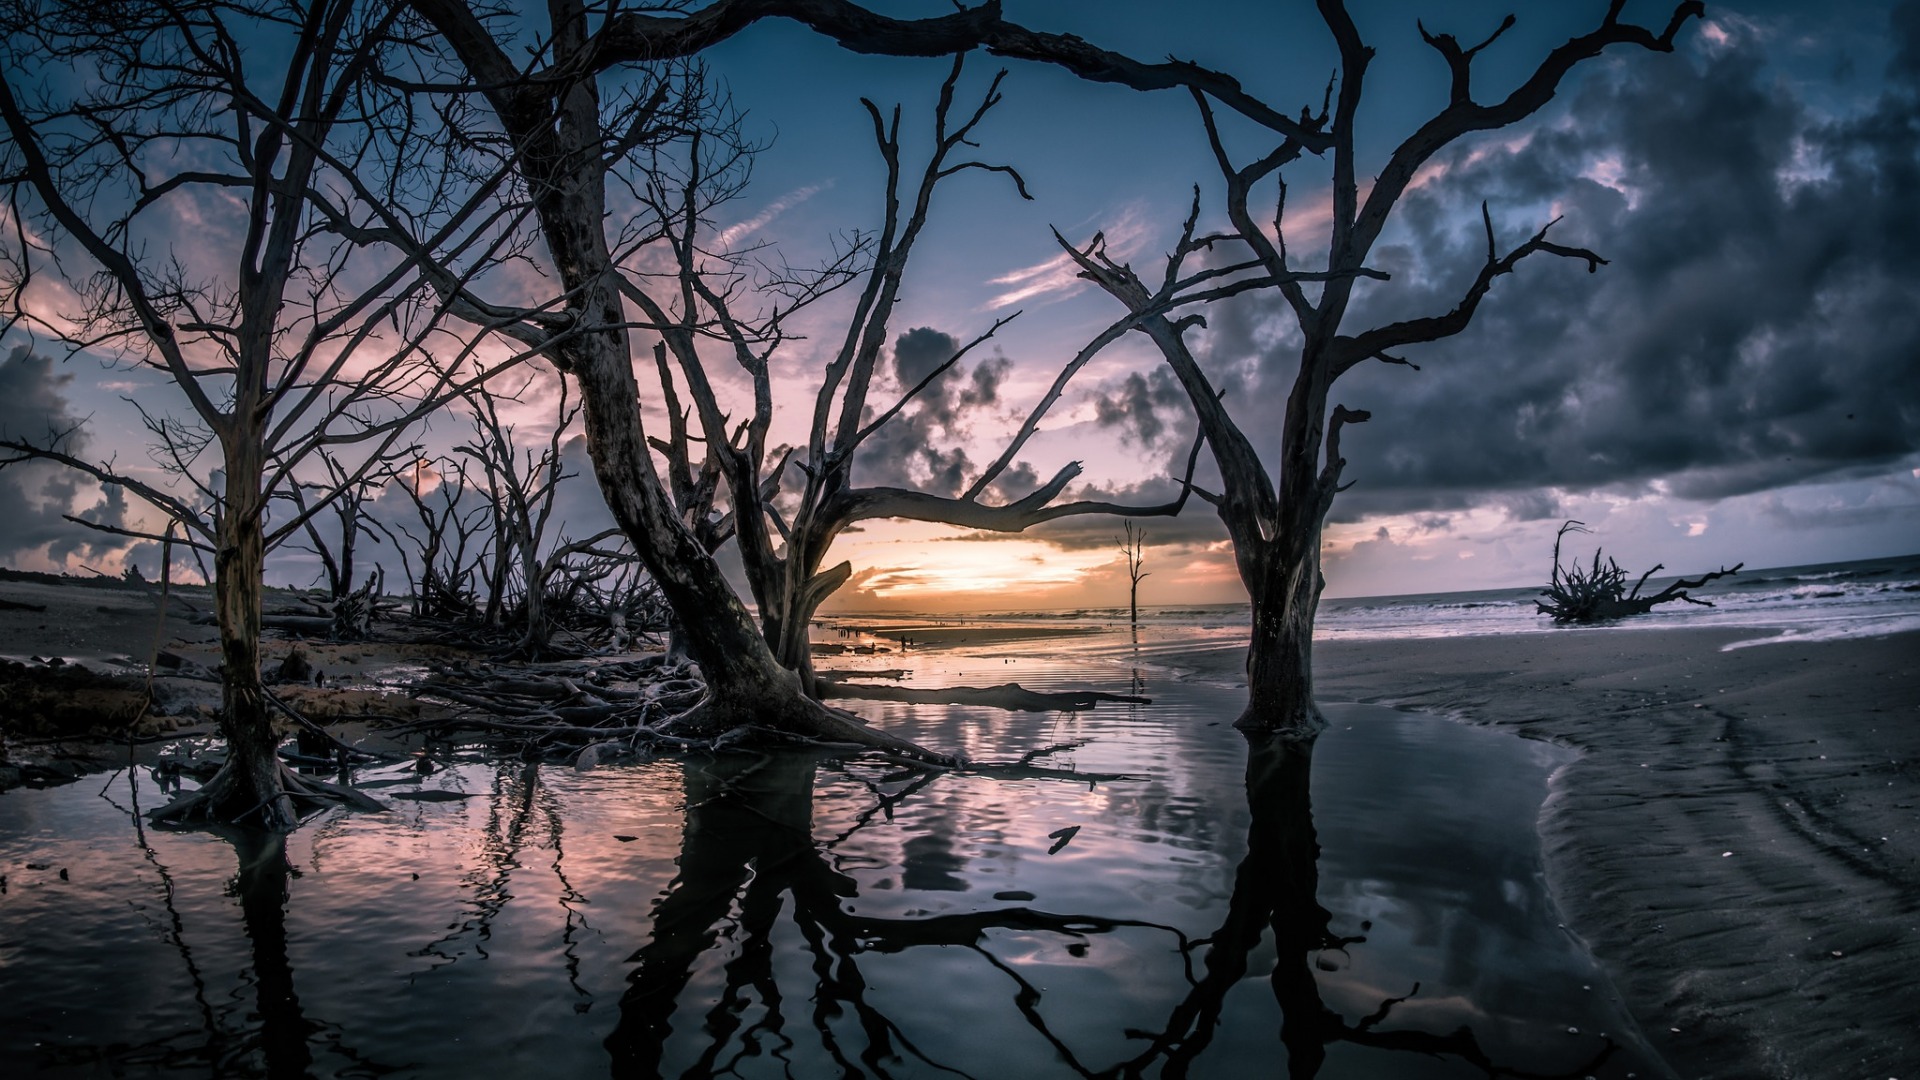 تصویر شگفت آور و جالب از درختان خشک شده وسط دریا